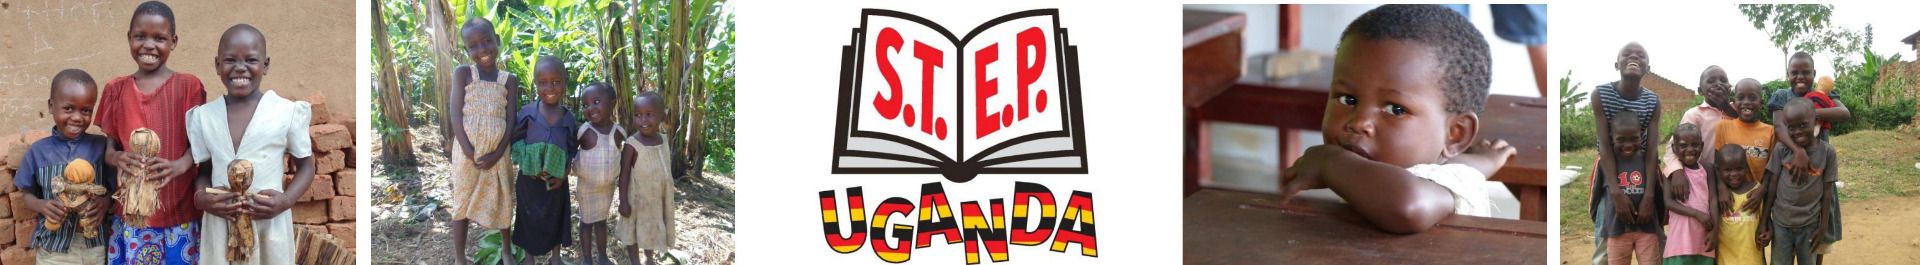 S.T.E.P. Uganda e.V